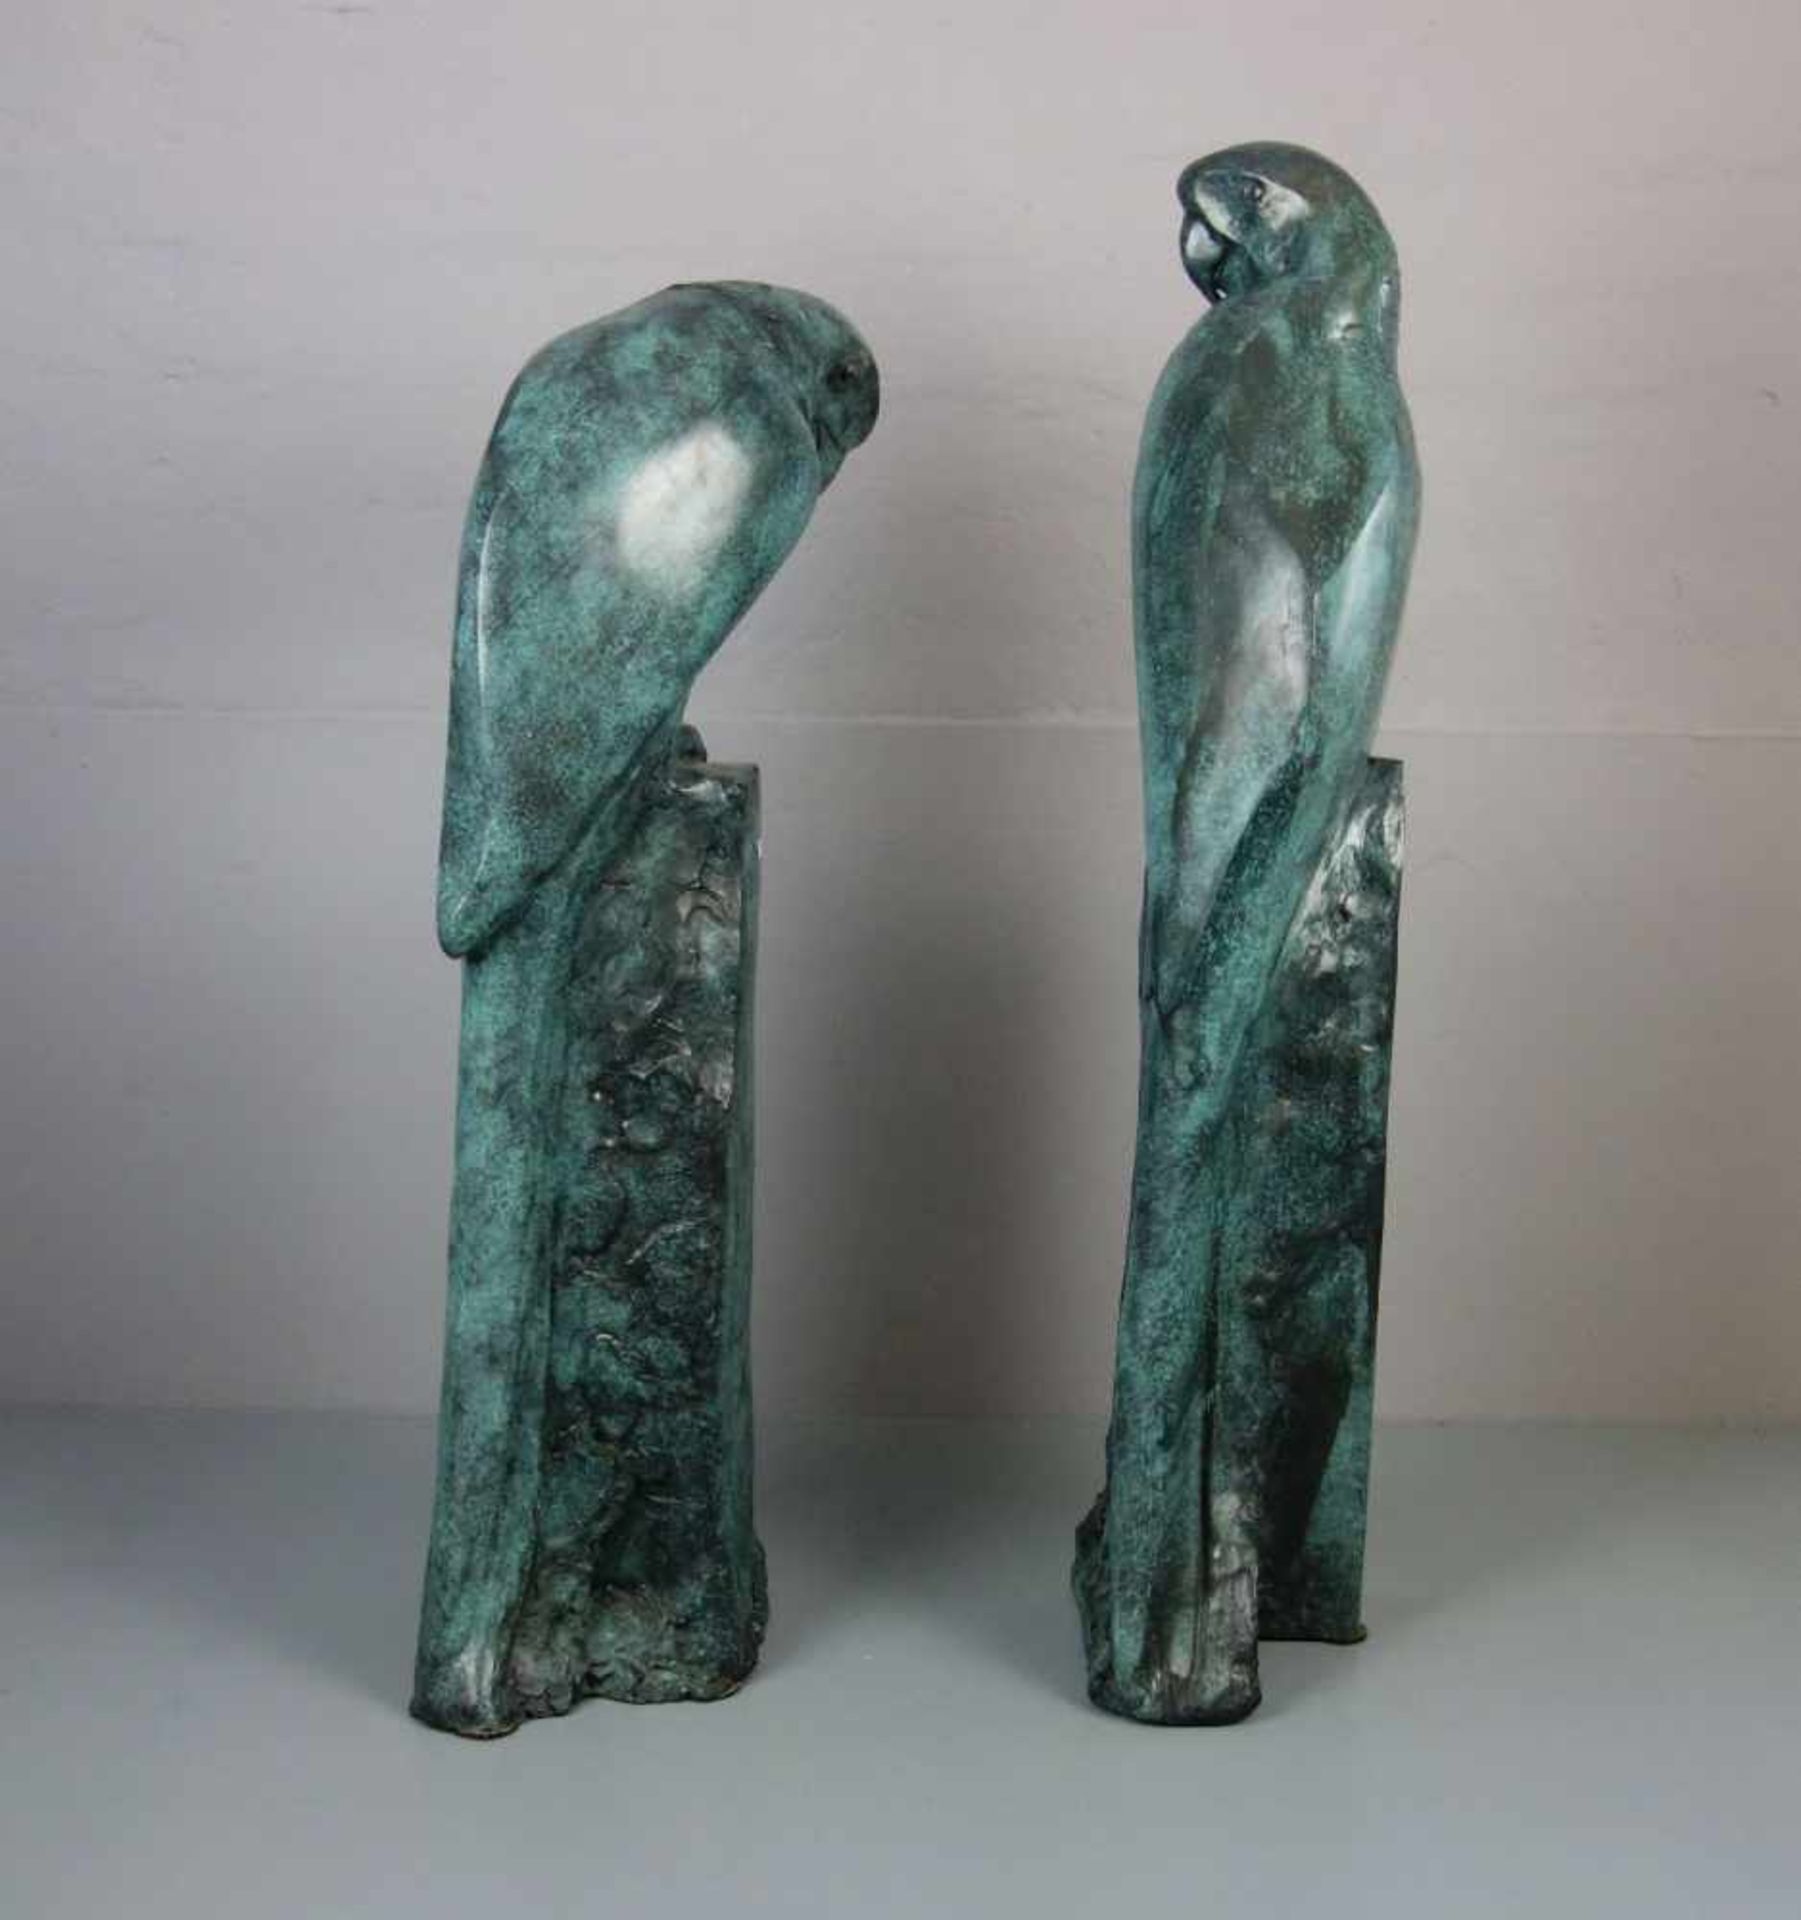 ANONYMUS (Bildhauer / Animalier des 20. Jh.), Skulpturenpaar / sculptures: "Papageien / Aras", - Bild 4 aus 4